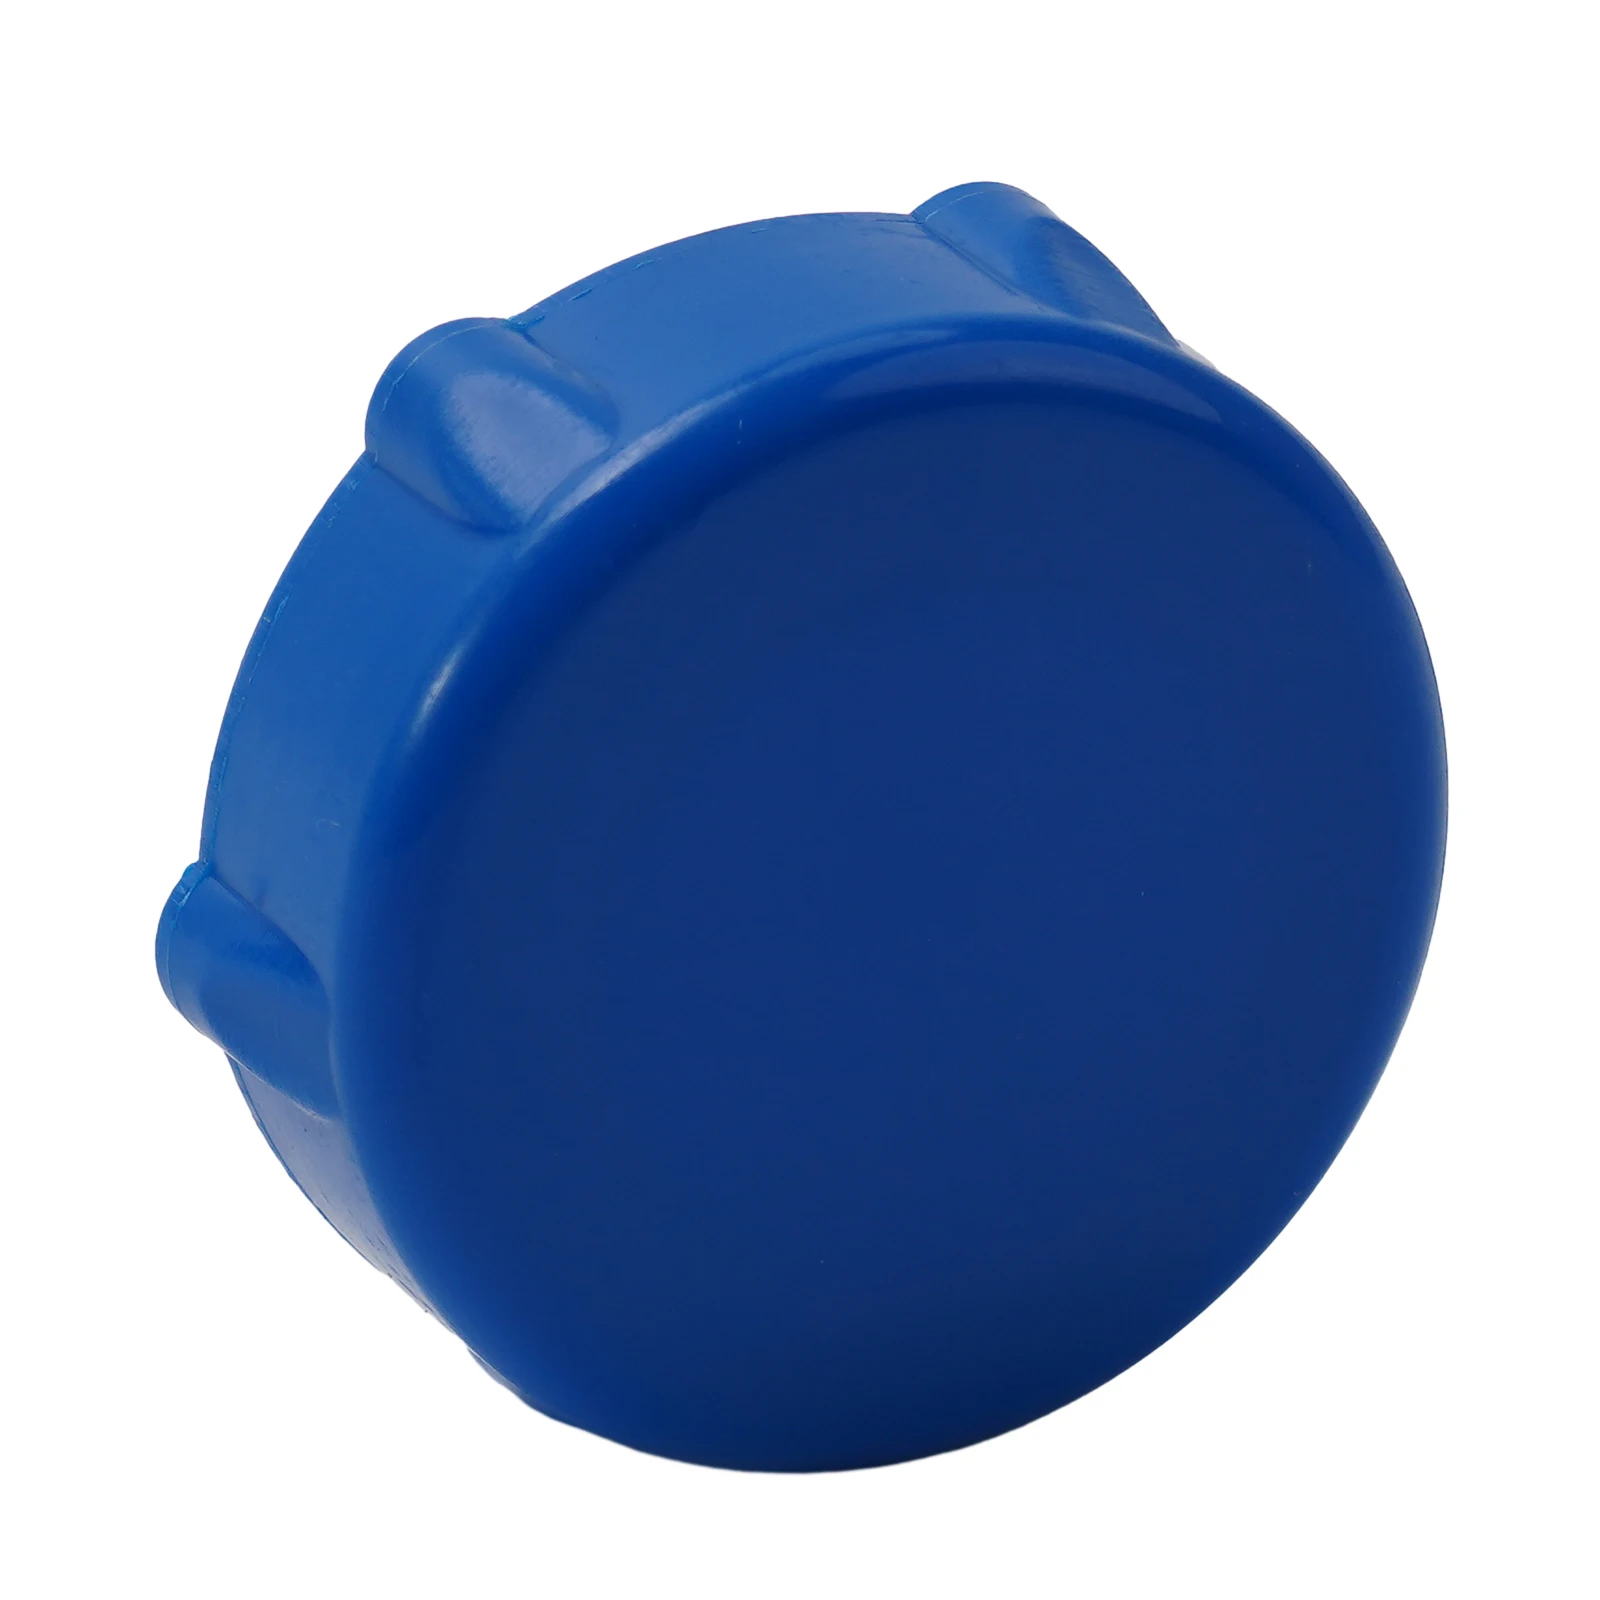 

Простая установка, крышка дренажного клапана, запасная часть, 1 шт., синяя для бассейнов Coleman, модель P01006 P01006 P01010 для спа Coleman